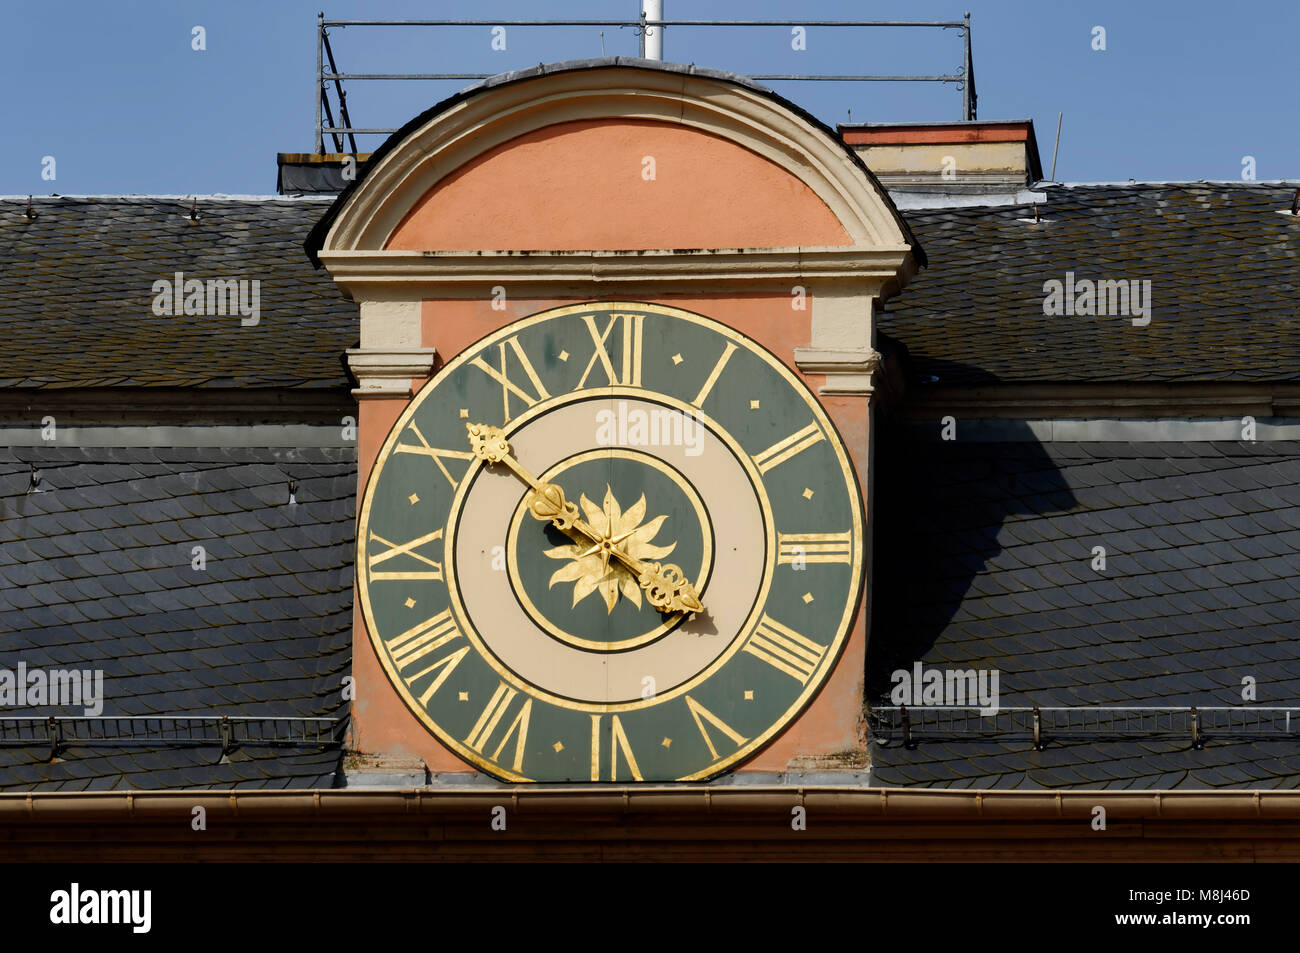 Schwetzingen: Uhr auf Schloss Schwetzingen, Rhein-Neckar-Kreis,  Baden-Württemberg, Deutschland Stockfotografie - Alamy